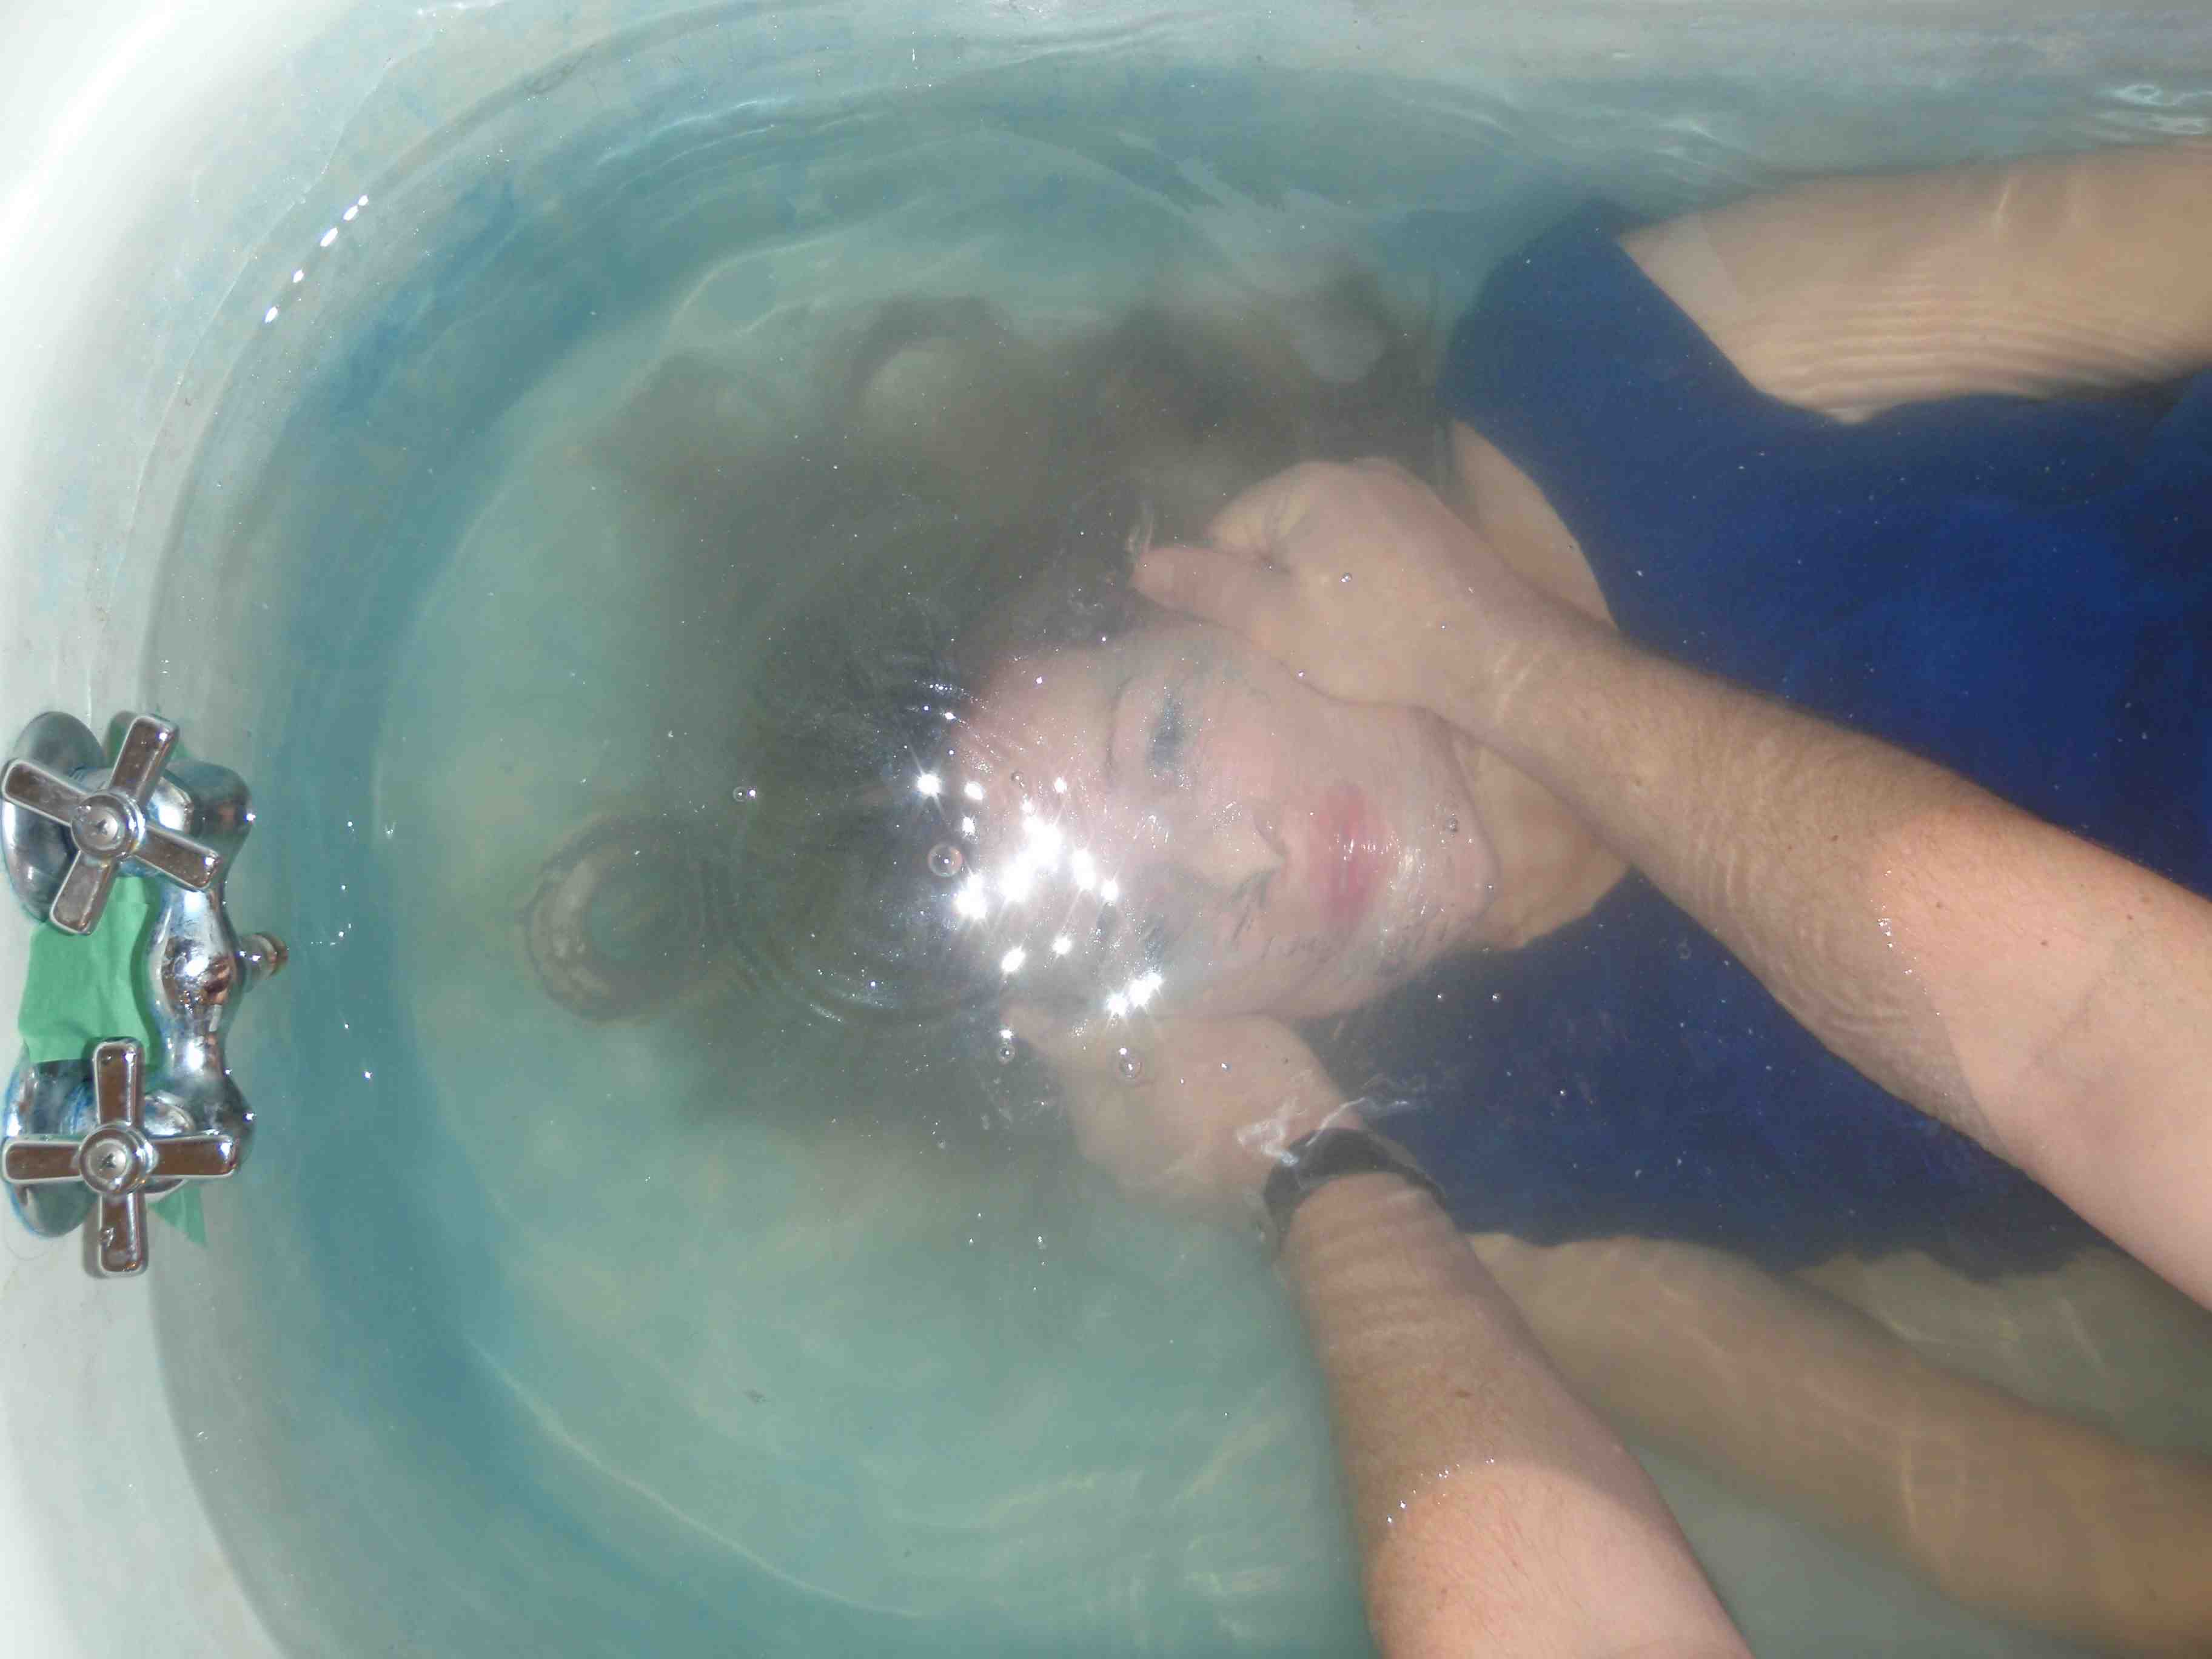 Underwater in bathtub